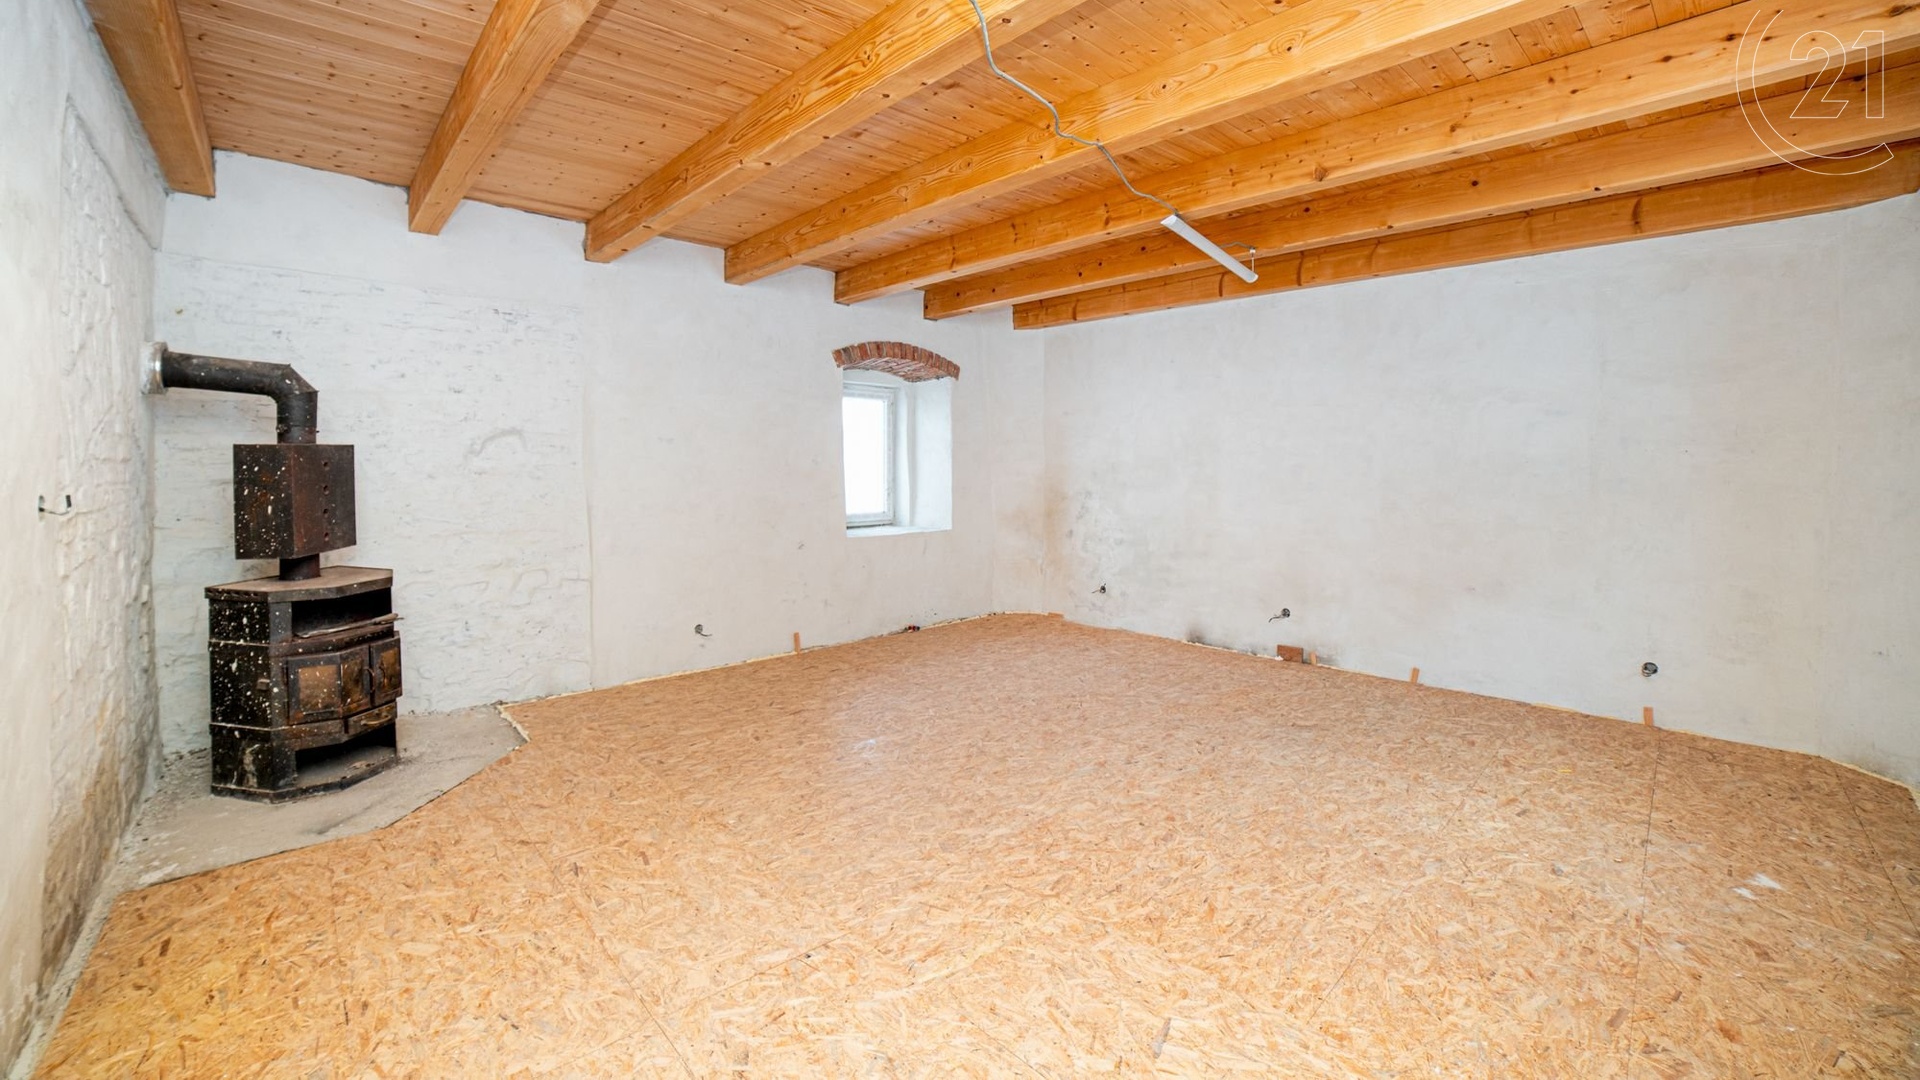 Prodej rodinného domu pod zámkem ve Fulneku, 91 m², s vyřízením úvěru až 1 milion korun na rekonstrukci